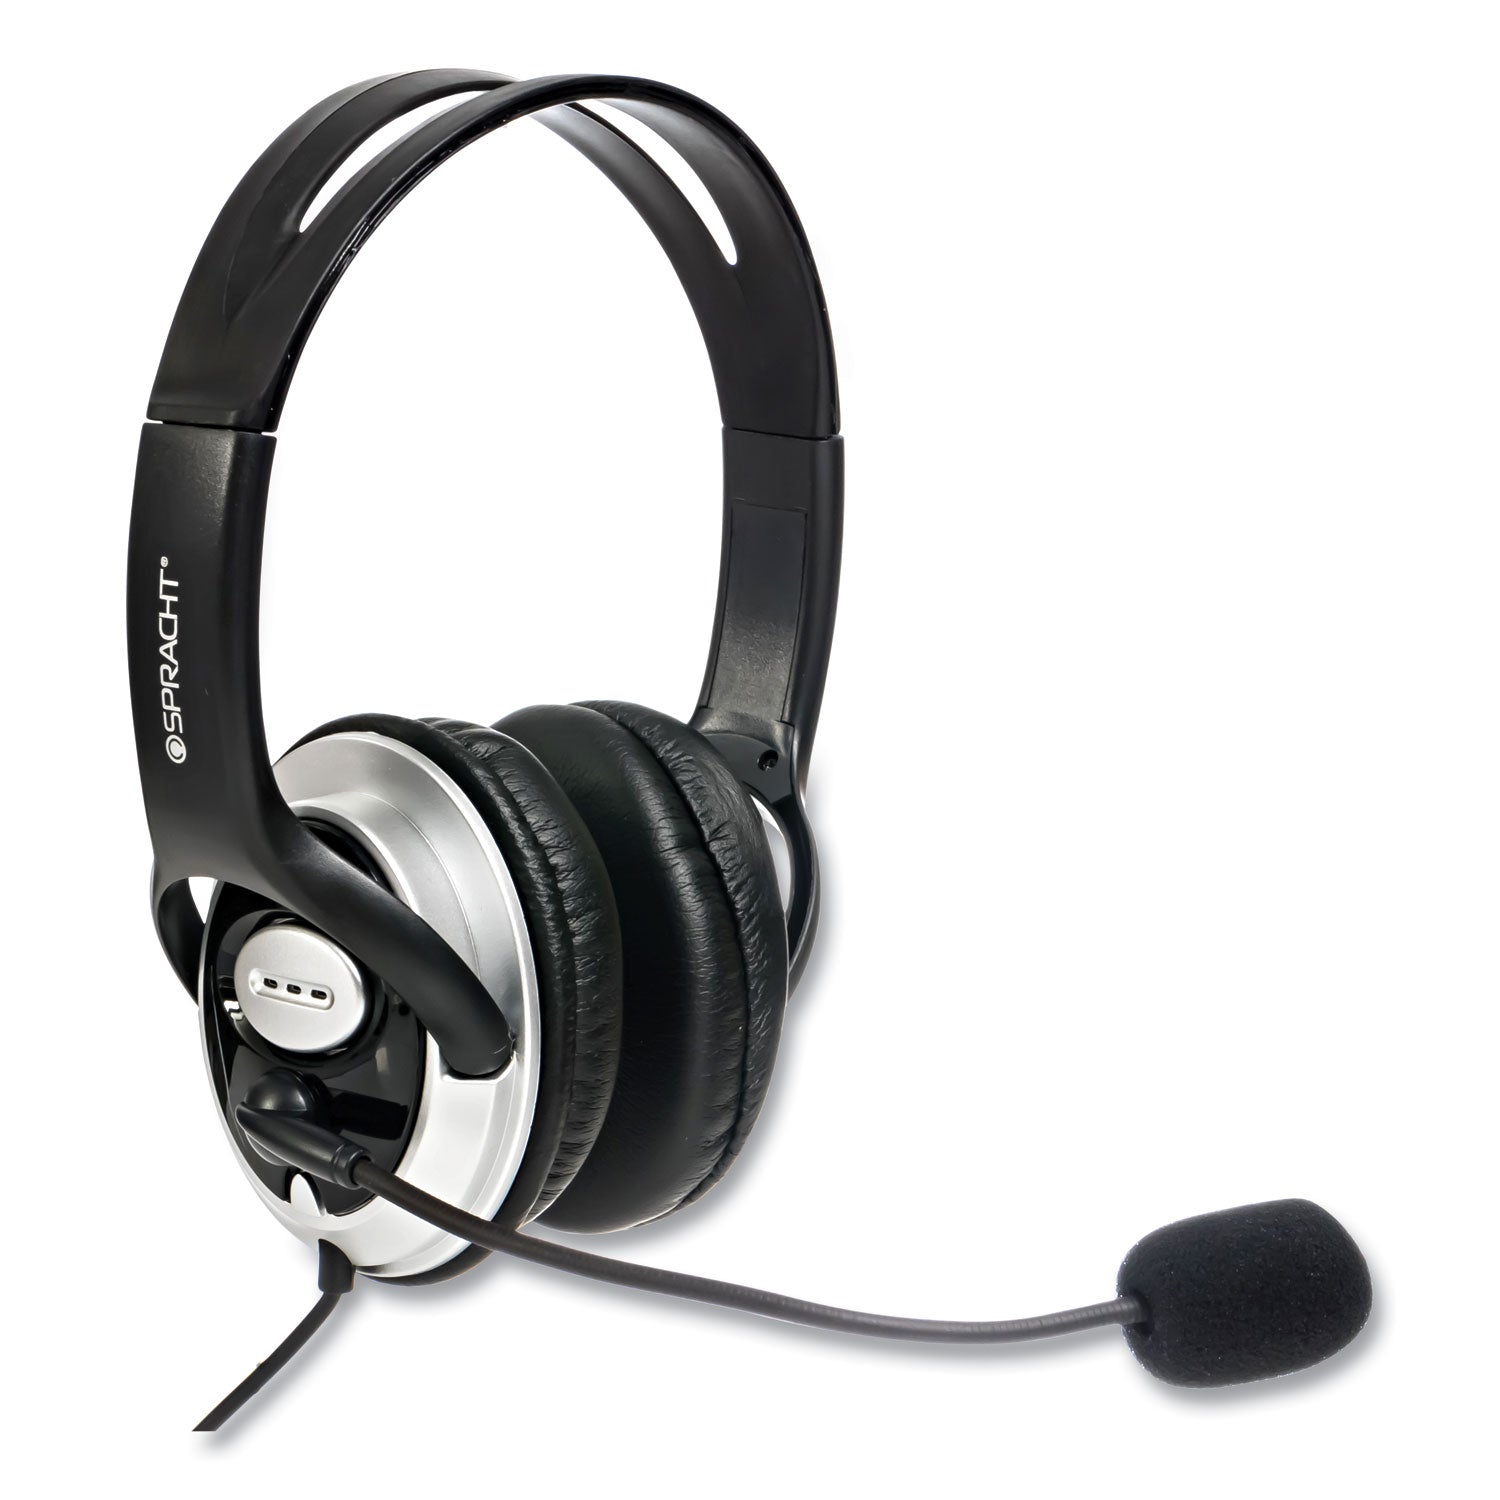 zum-binaural-over-the-head-headset-black-silver_sptzumwdusb2 - 5